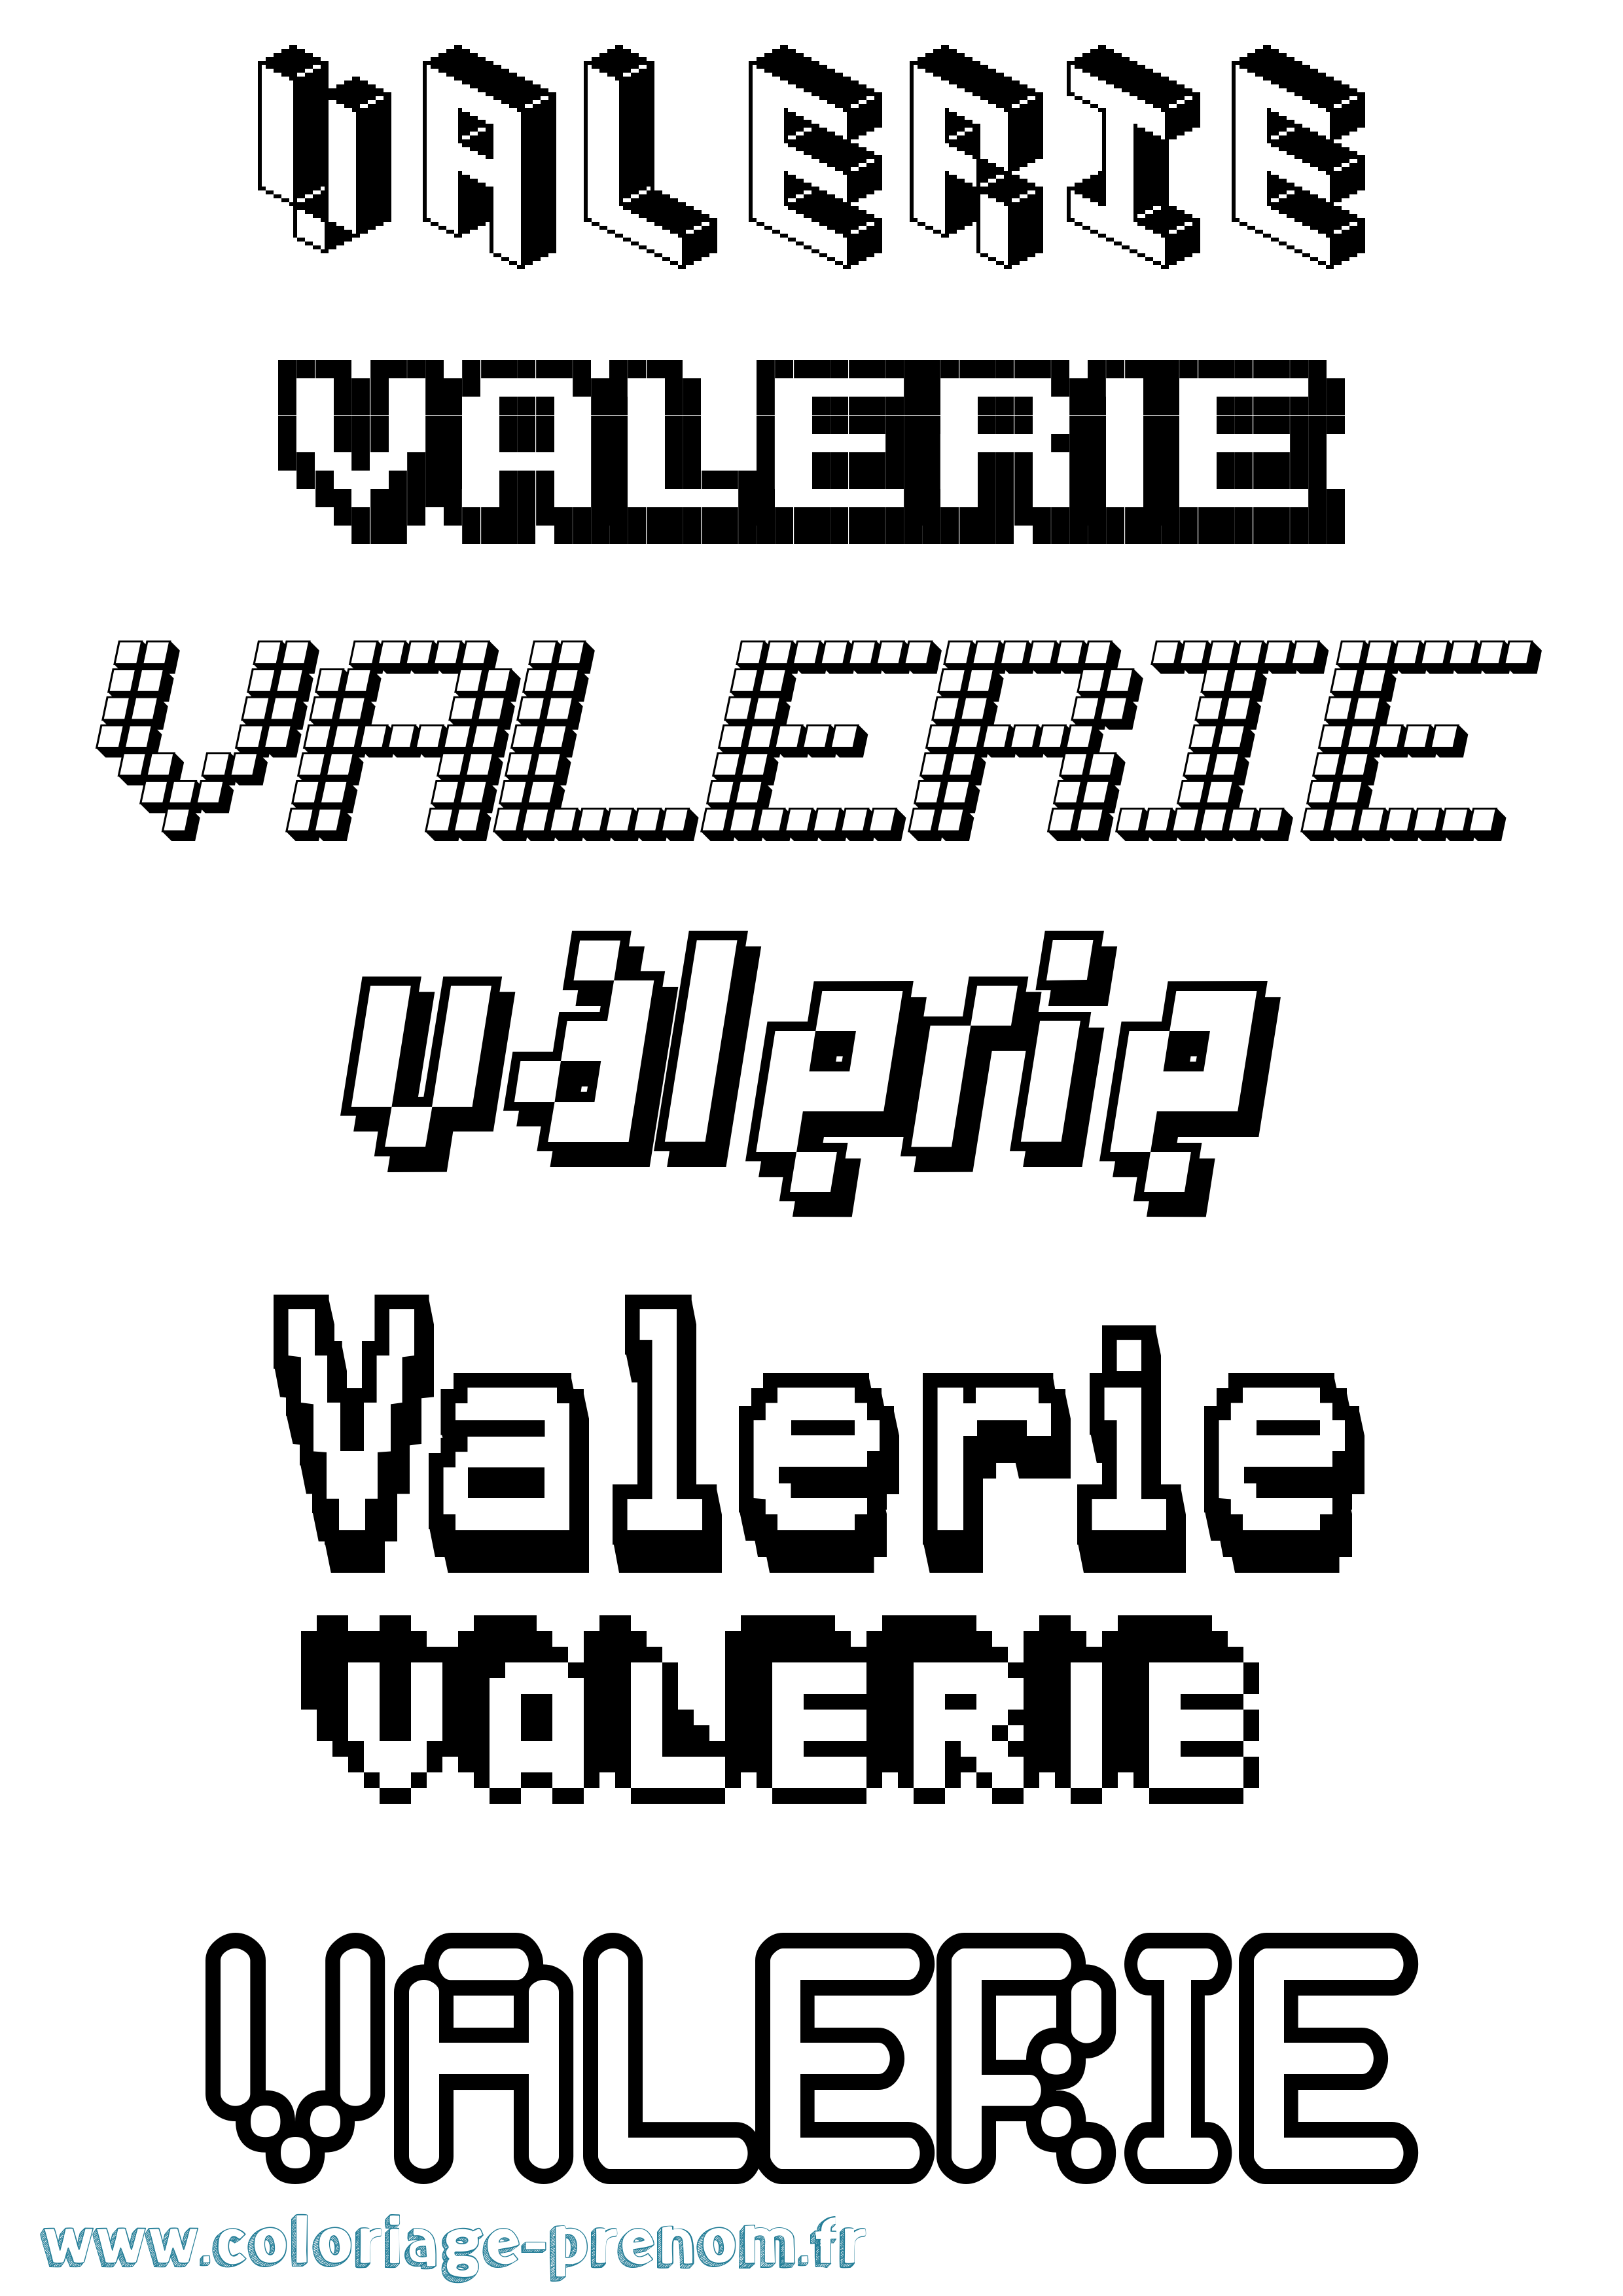 Coloriage prénom Valerie